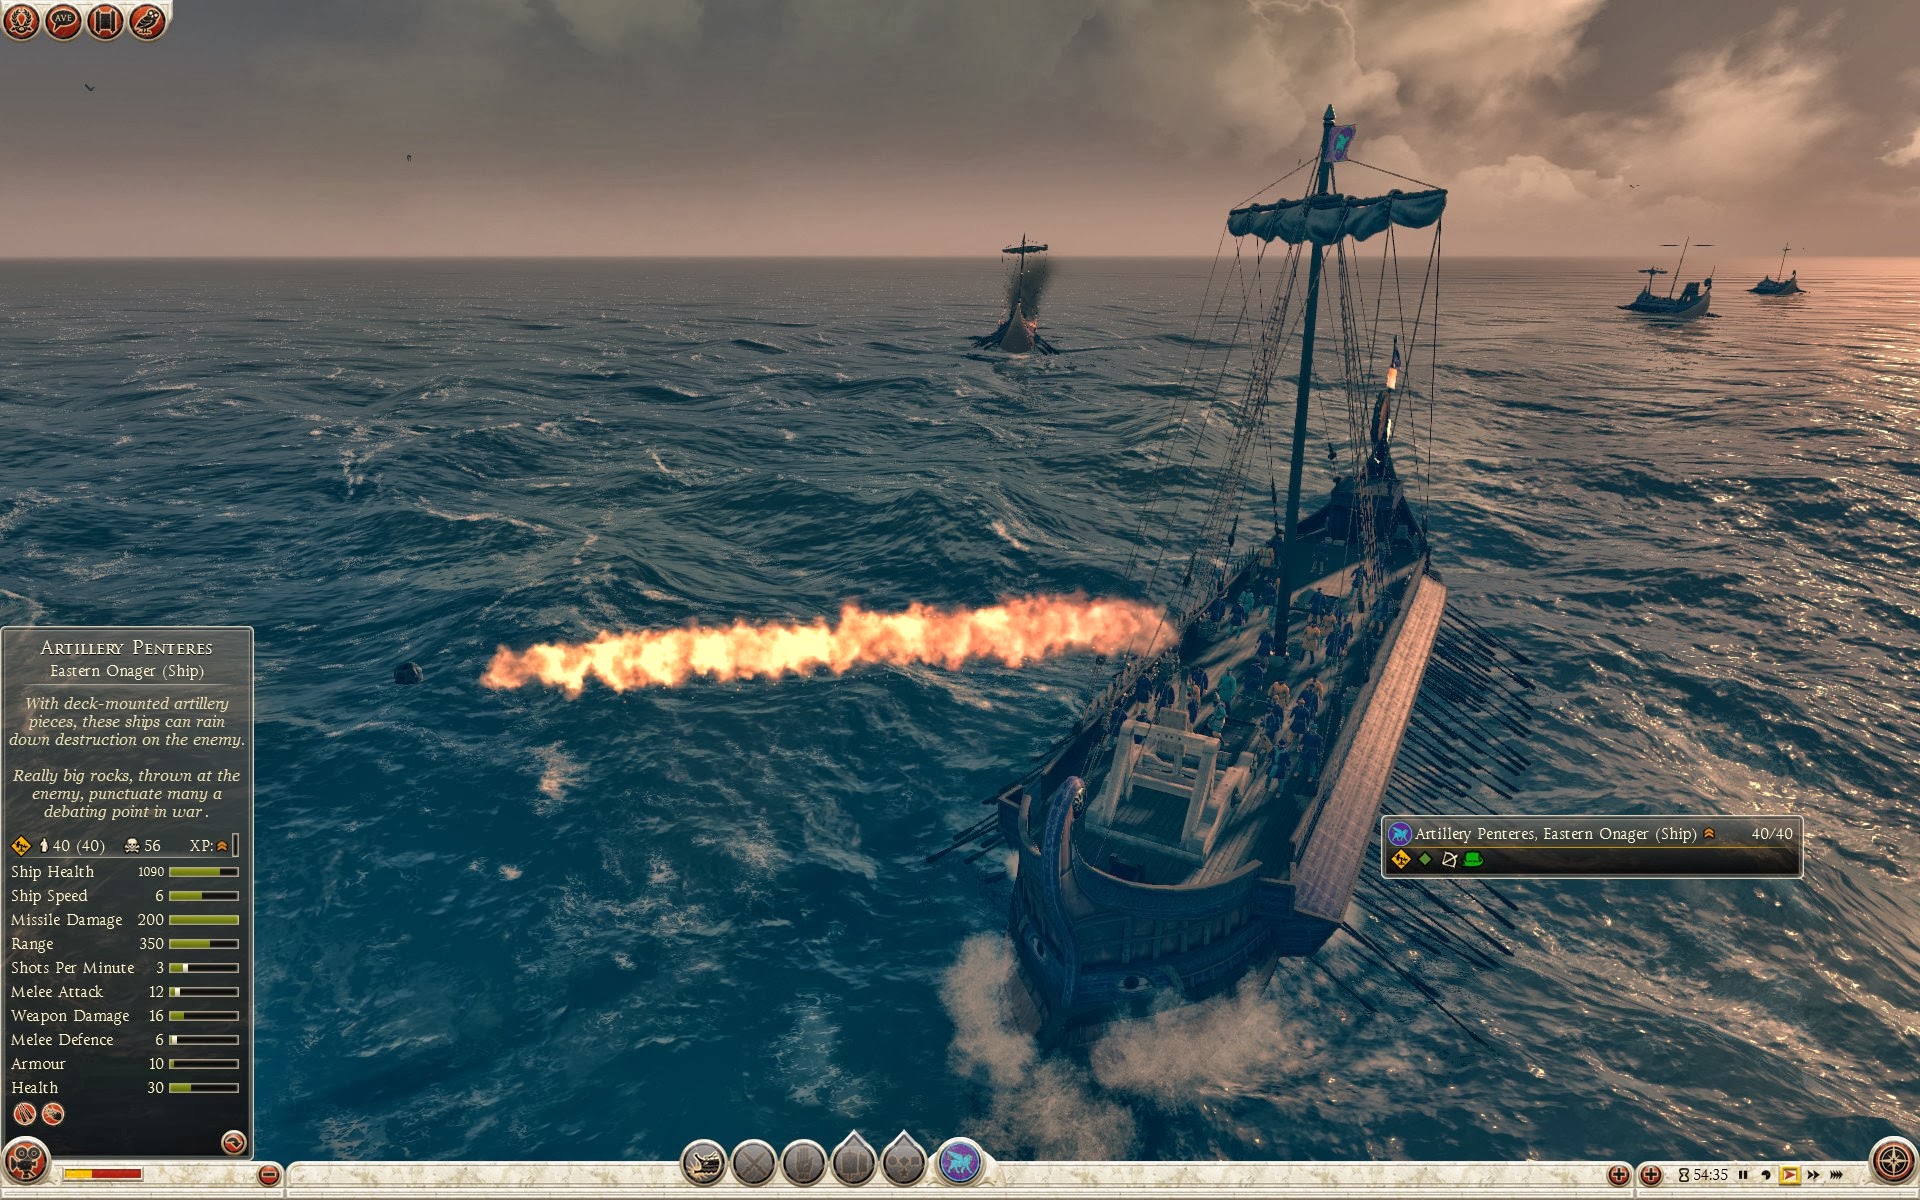 Artillerie-Pentere - Östlicher Onager (Schiff)